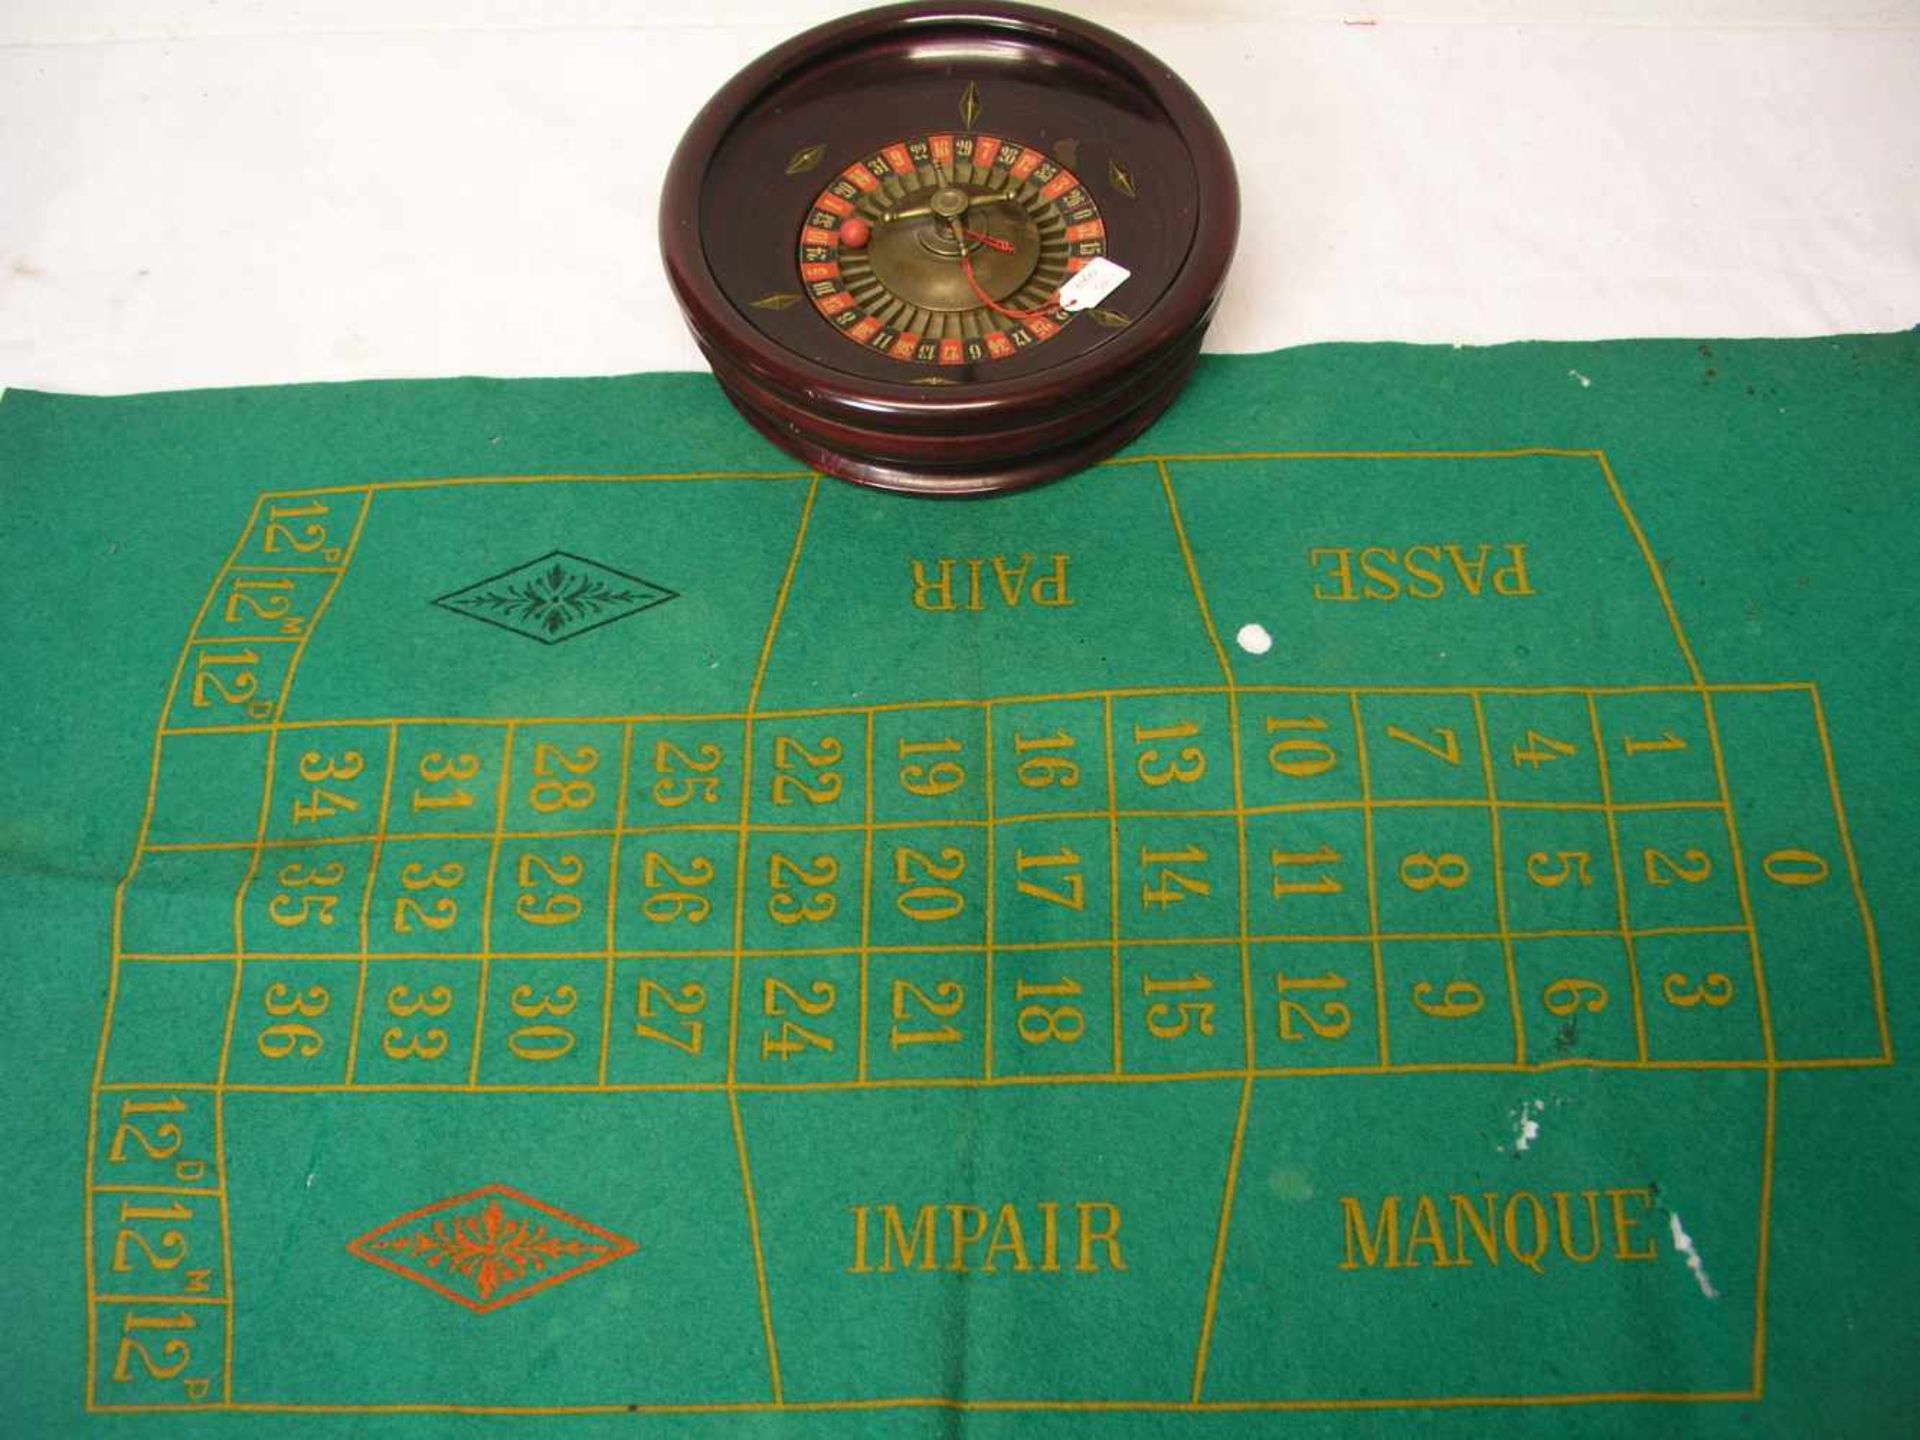 Tisch-Roulette. Filzteppich (beschädigt), Schale aus Holz, Durchmesser 22cm. Mit zwei